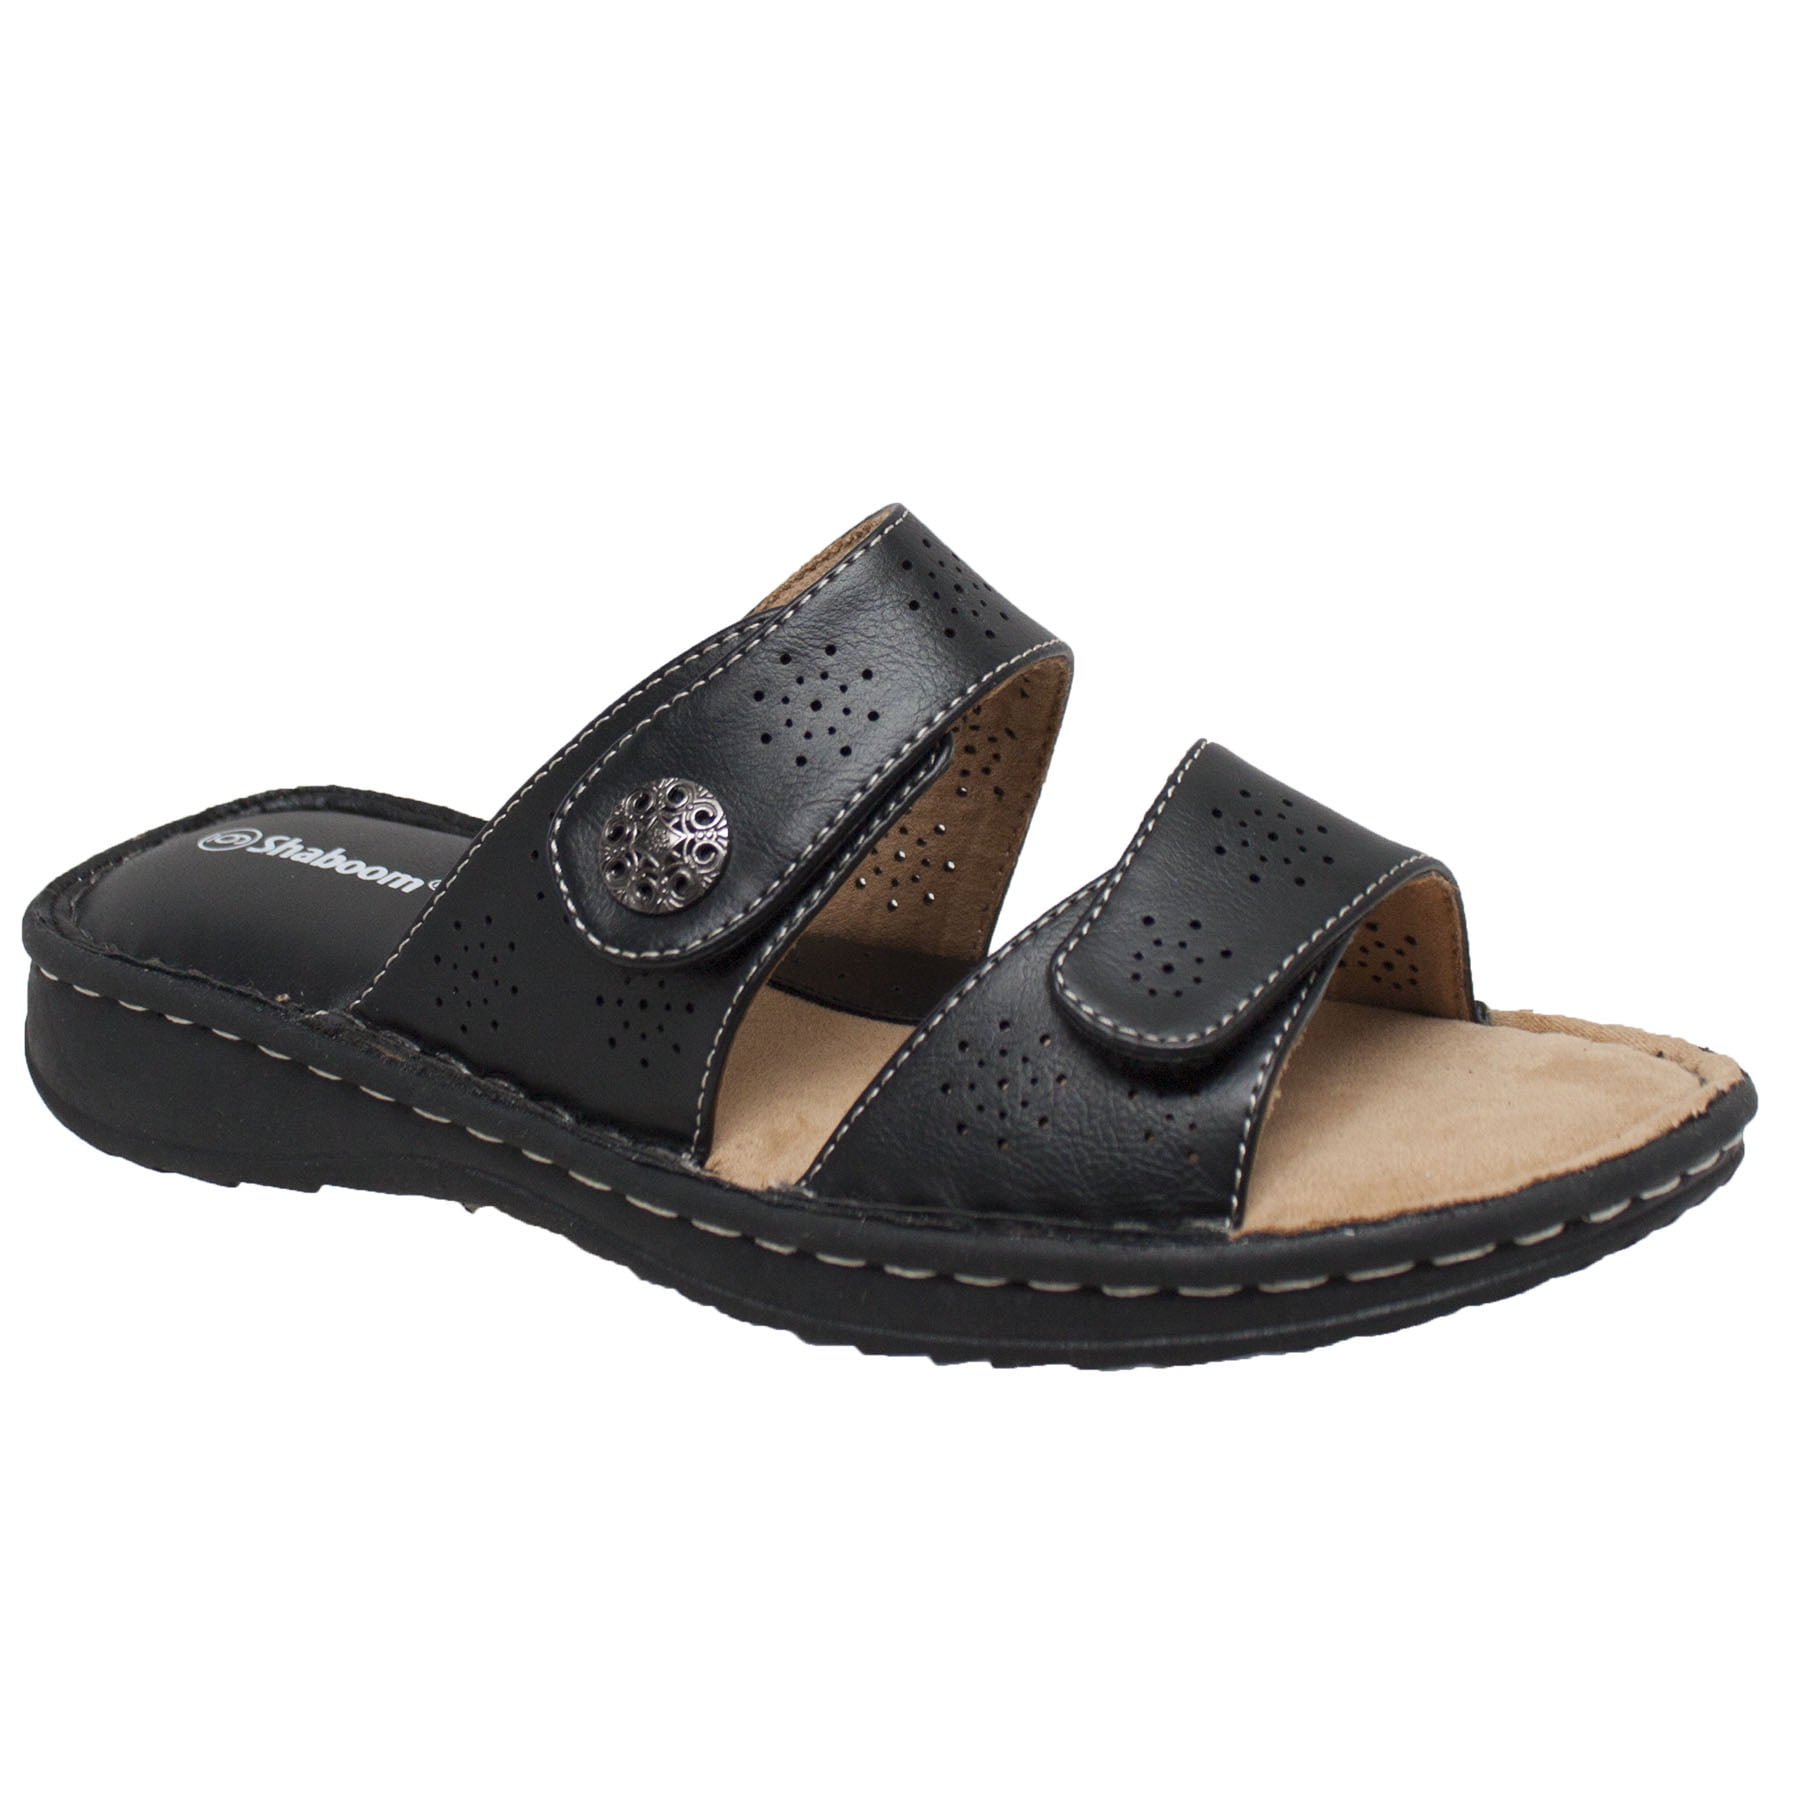 Shaboom Women s Comfort  Slide Sandals  Black Walmart 